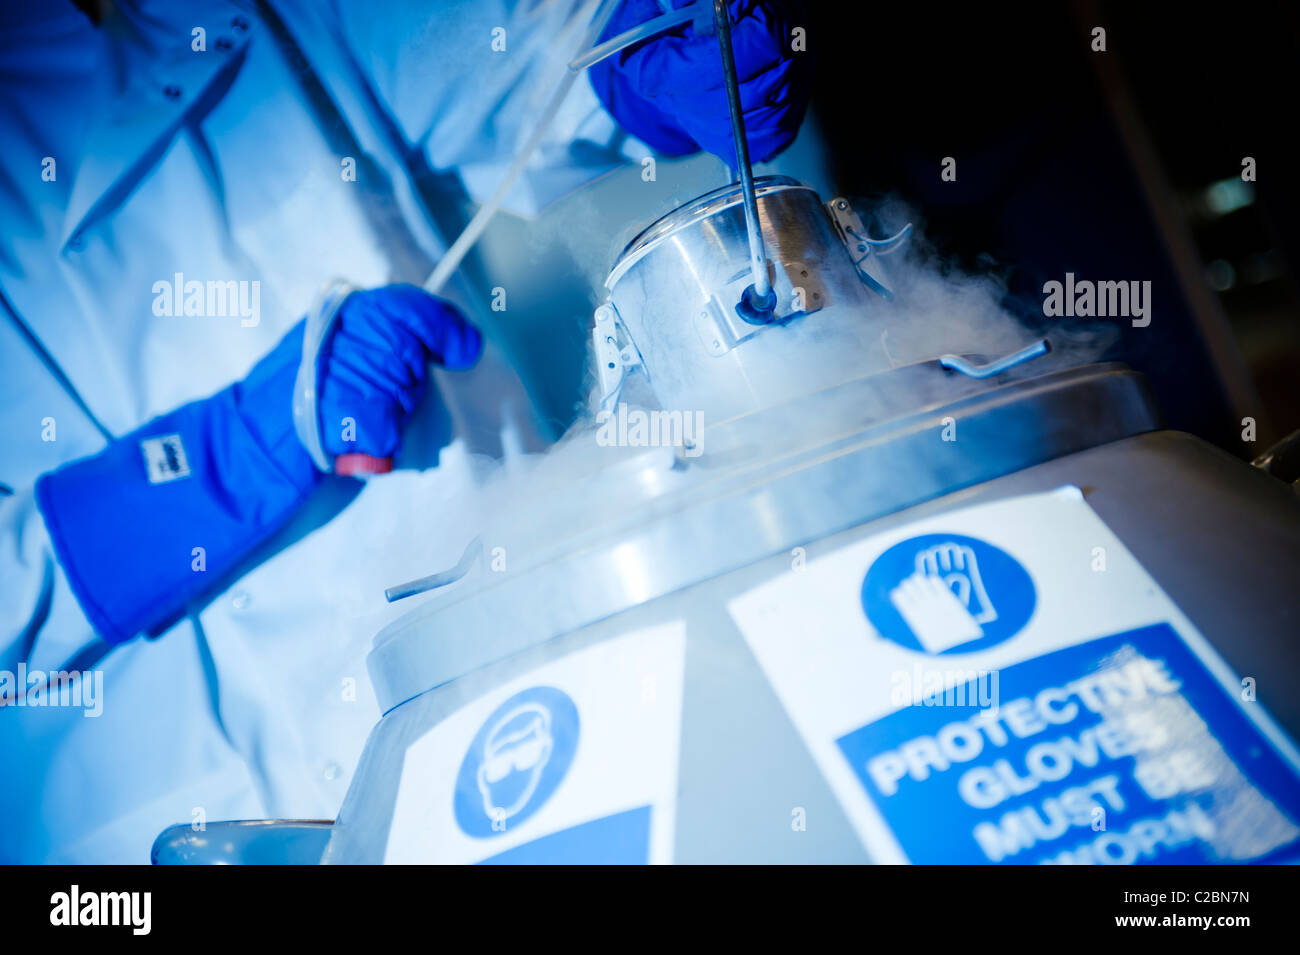 Porter des gants épais scientifique bleu et blanc manteau de laboratoire contenant hors de levage contenant de l'azote liquide Banque D'Images